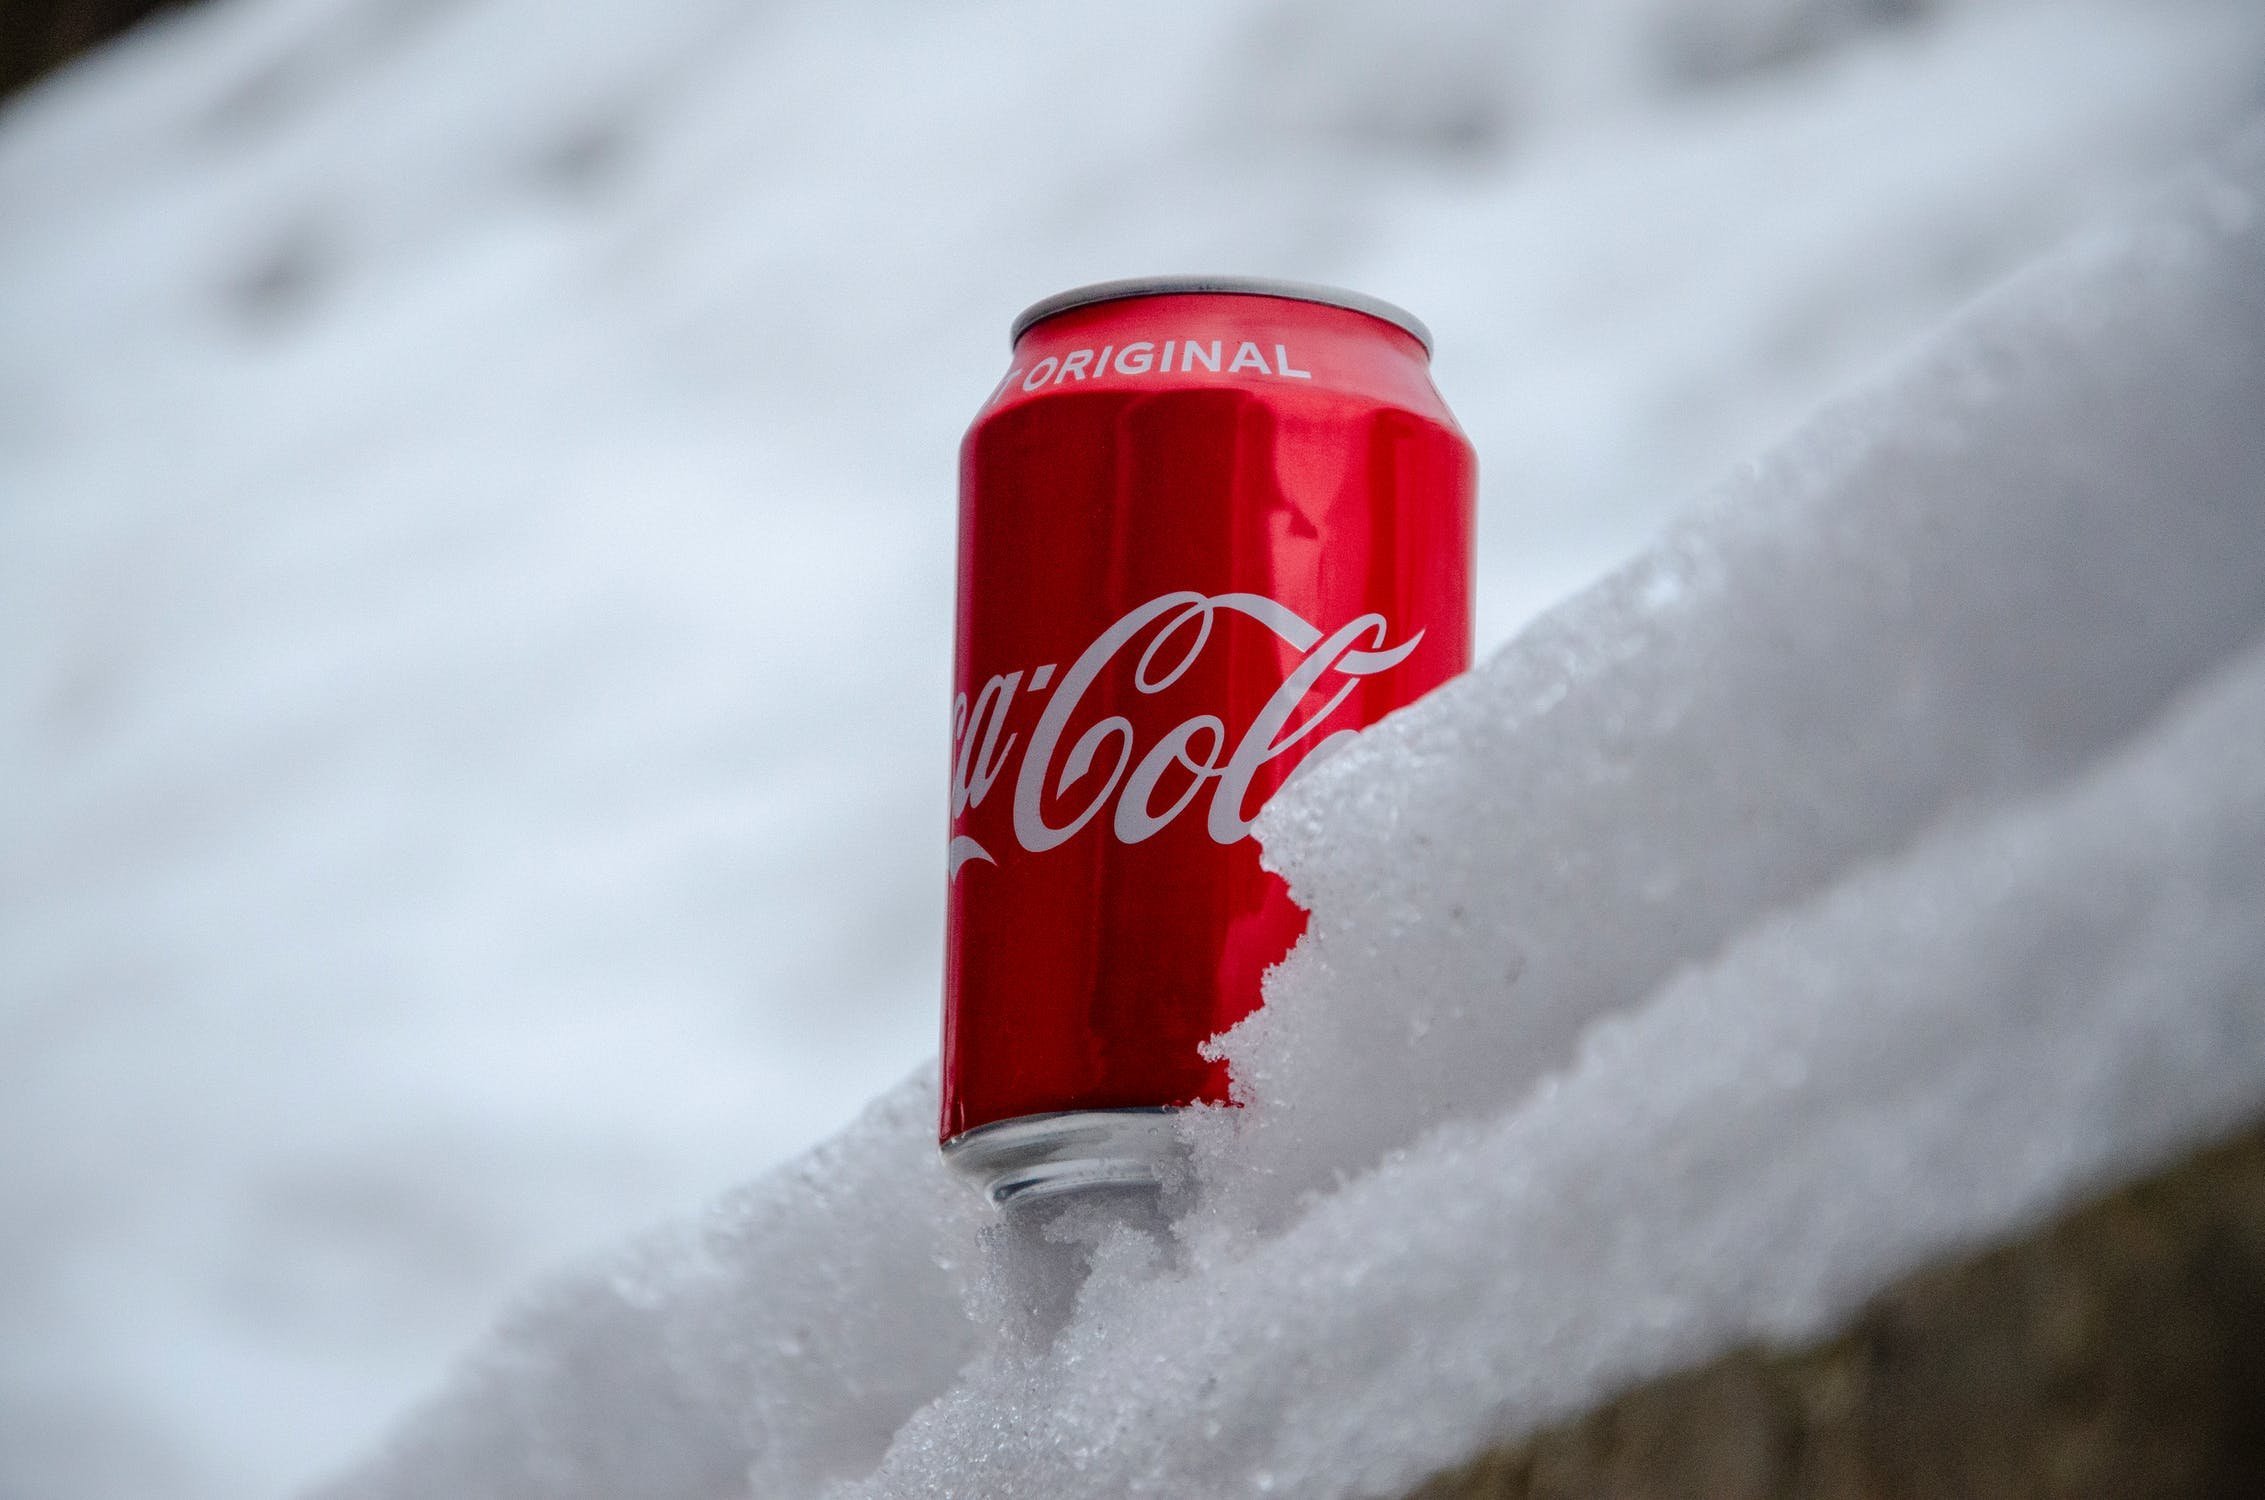 Кола слоган. Кока кола зима. Кока кола новый год. Зима Coca Cola. Кока кола слоган.